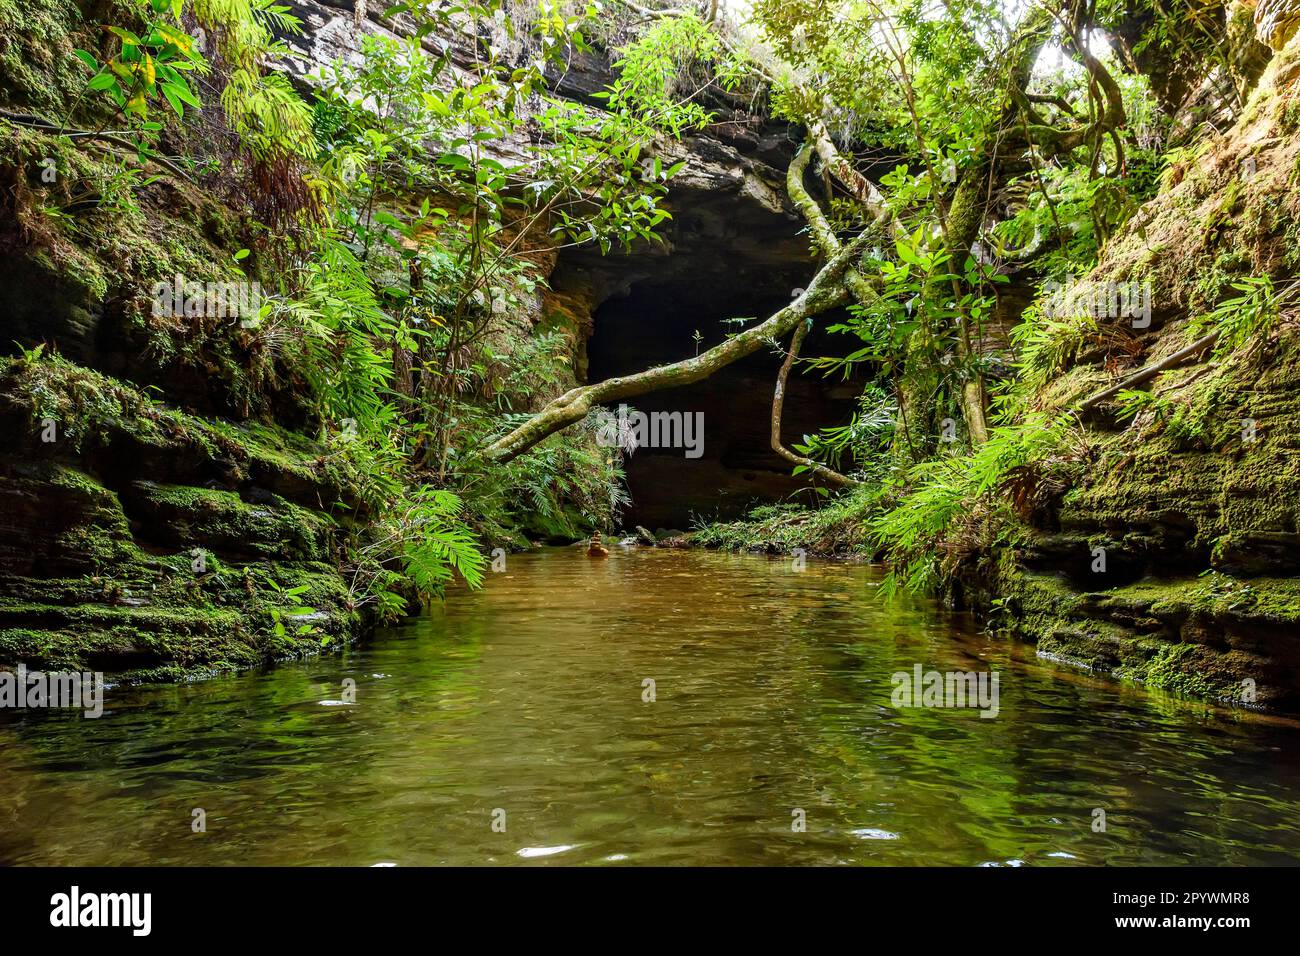 Fiume che scorre tranquillamente all'interno di una grotta con un'apertura attraverso la quale entra la luce e la vegetazione lussureggiante della foresta pluviale nella città di Carrancas Foto Stock